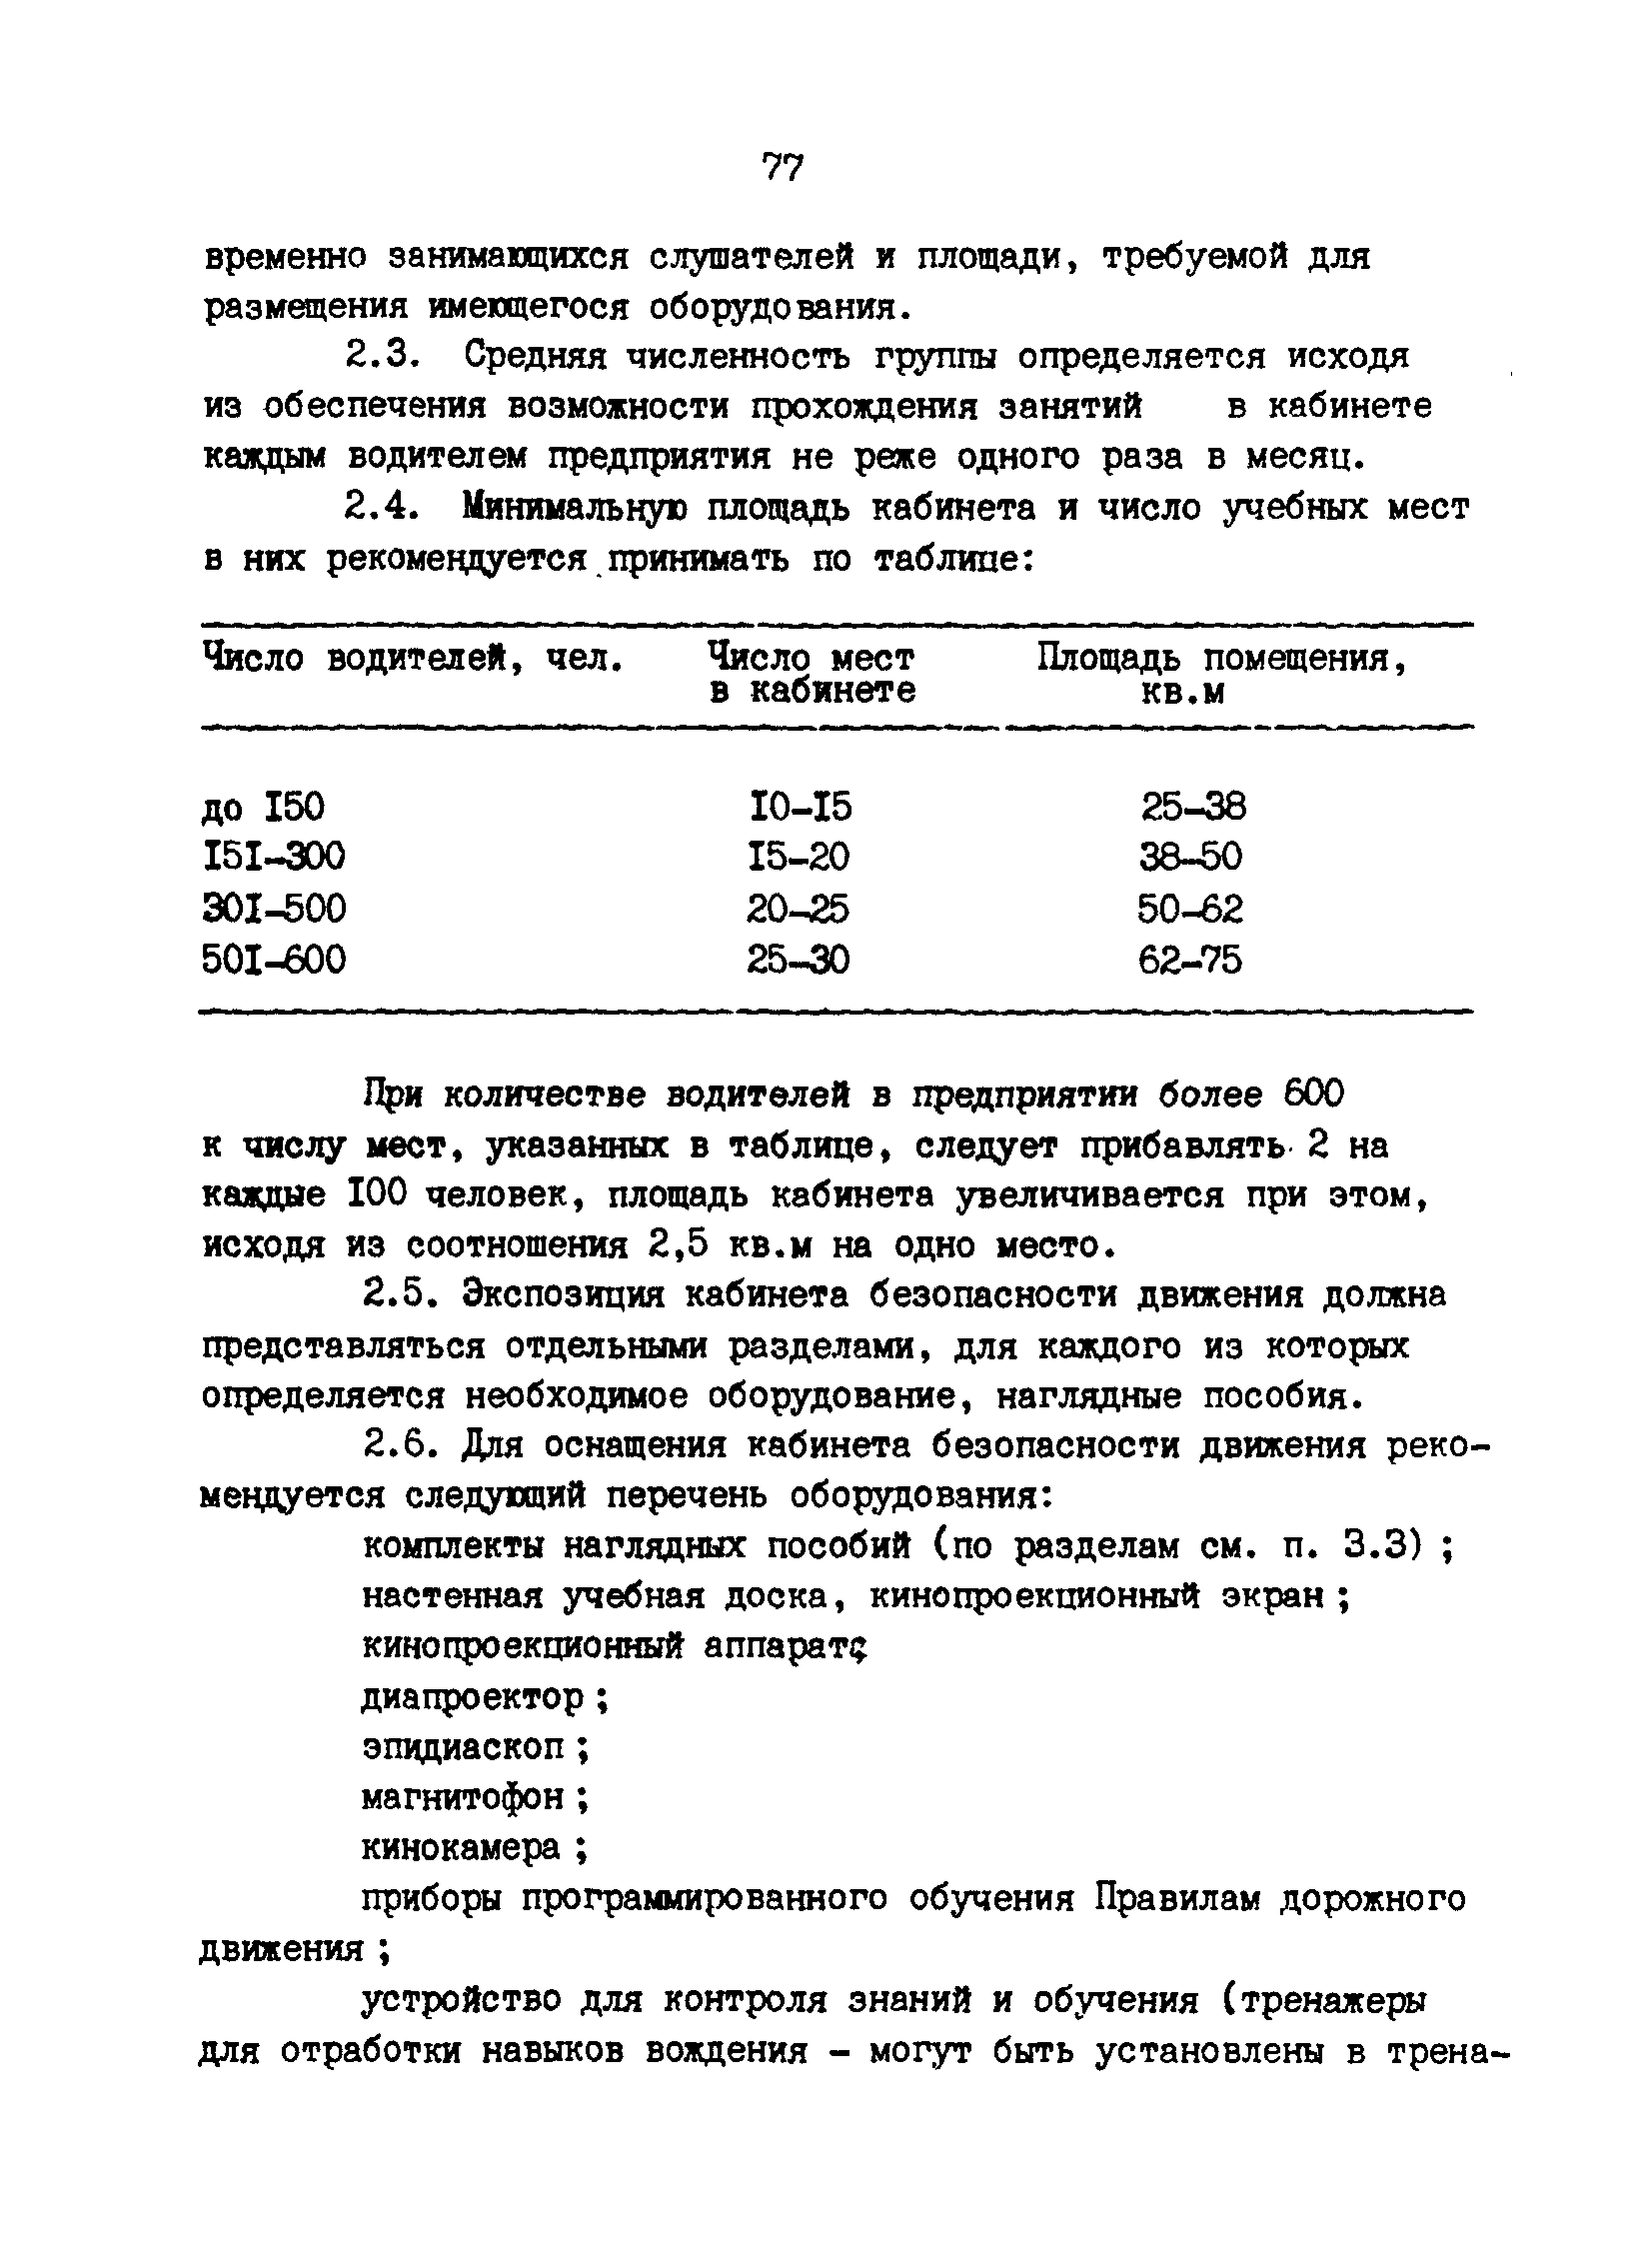 РД 200-РСФСР-12-0071-86-07